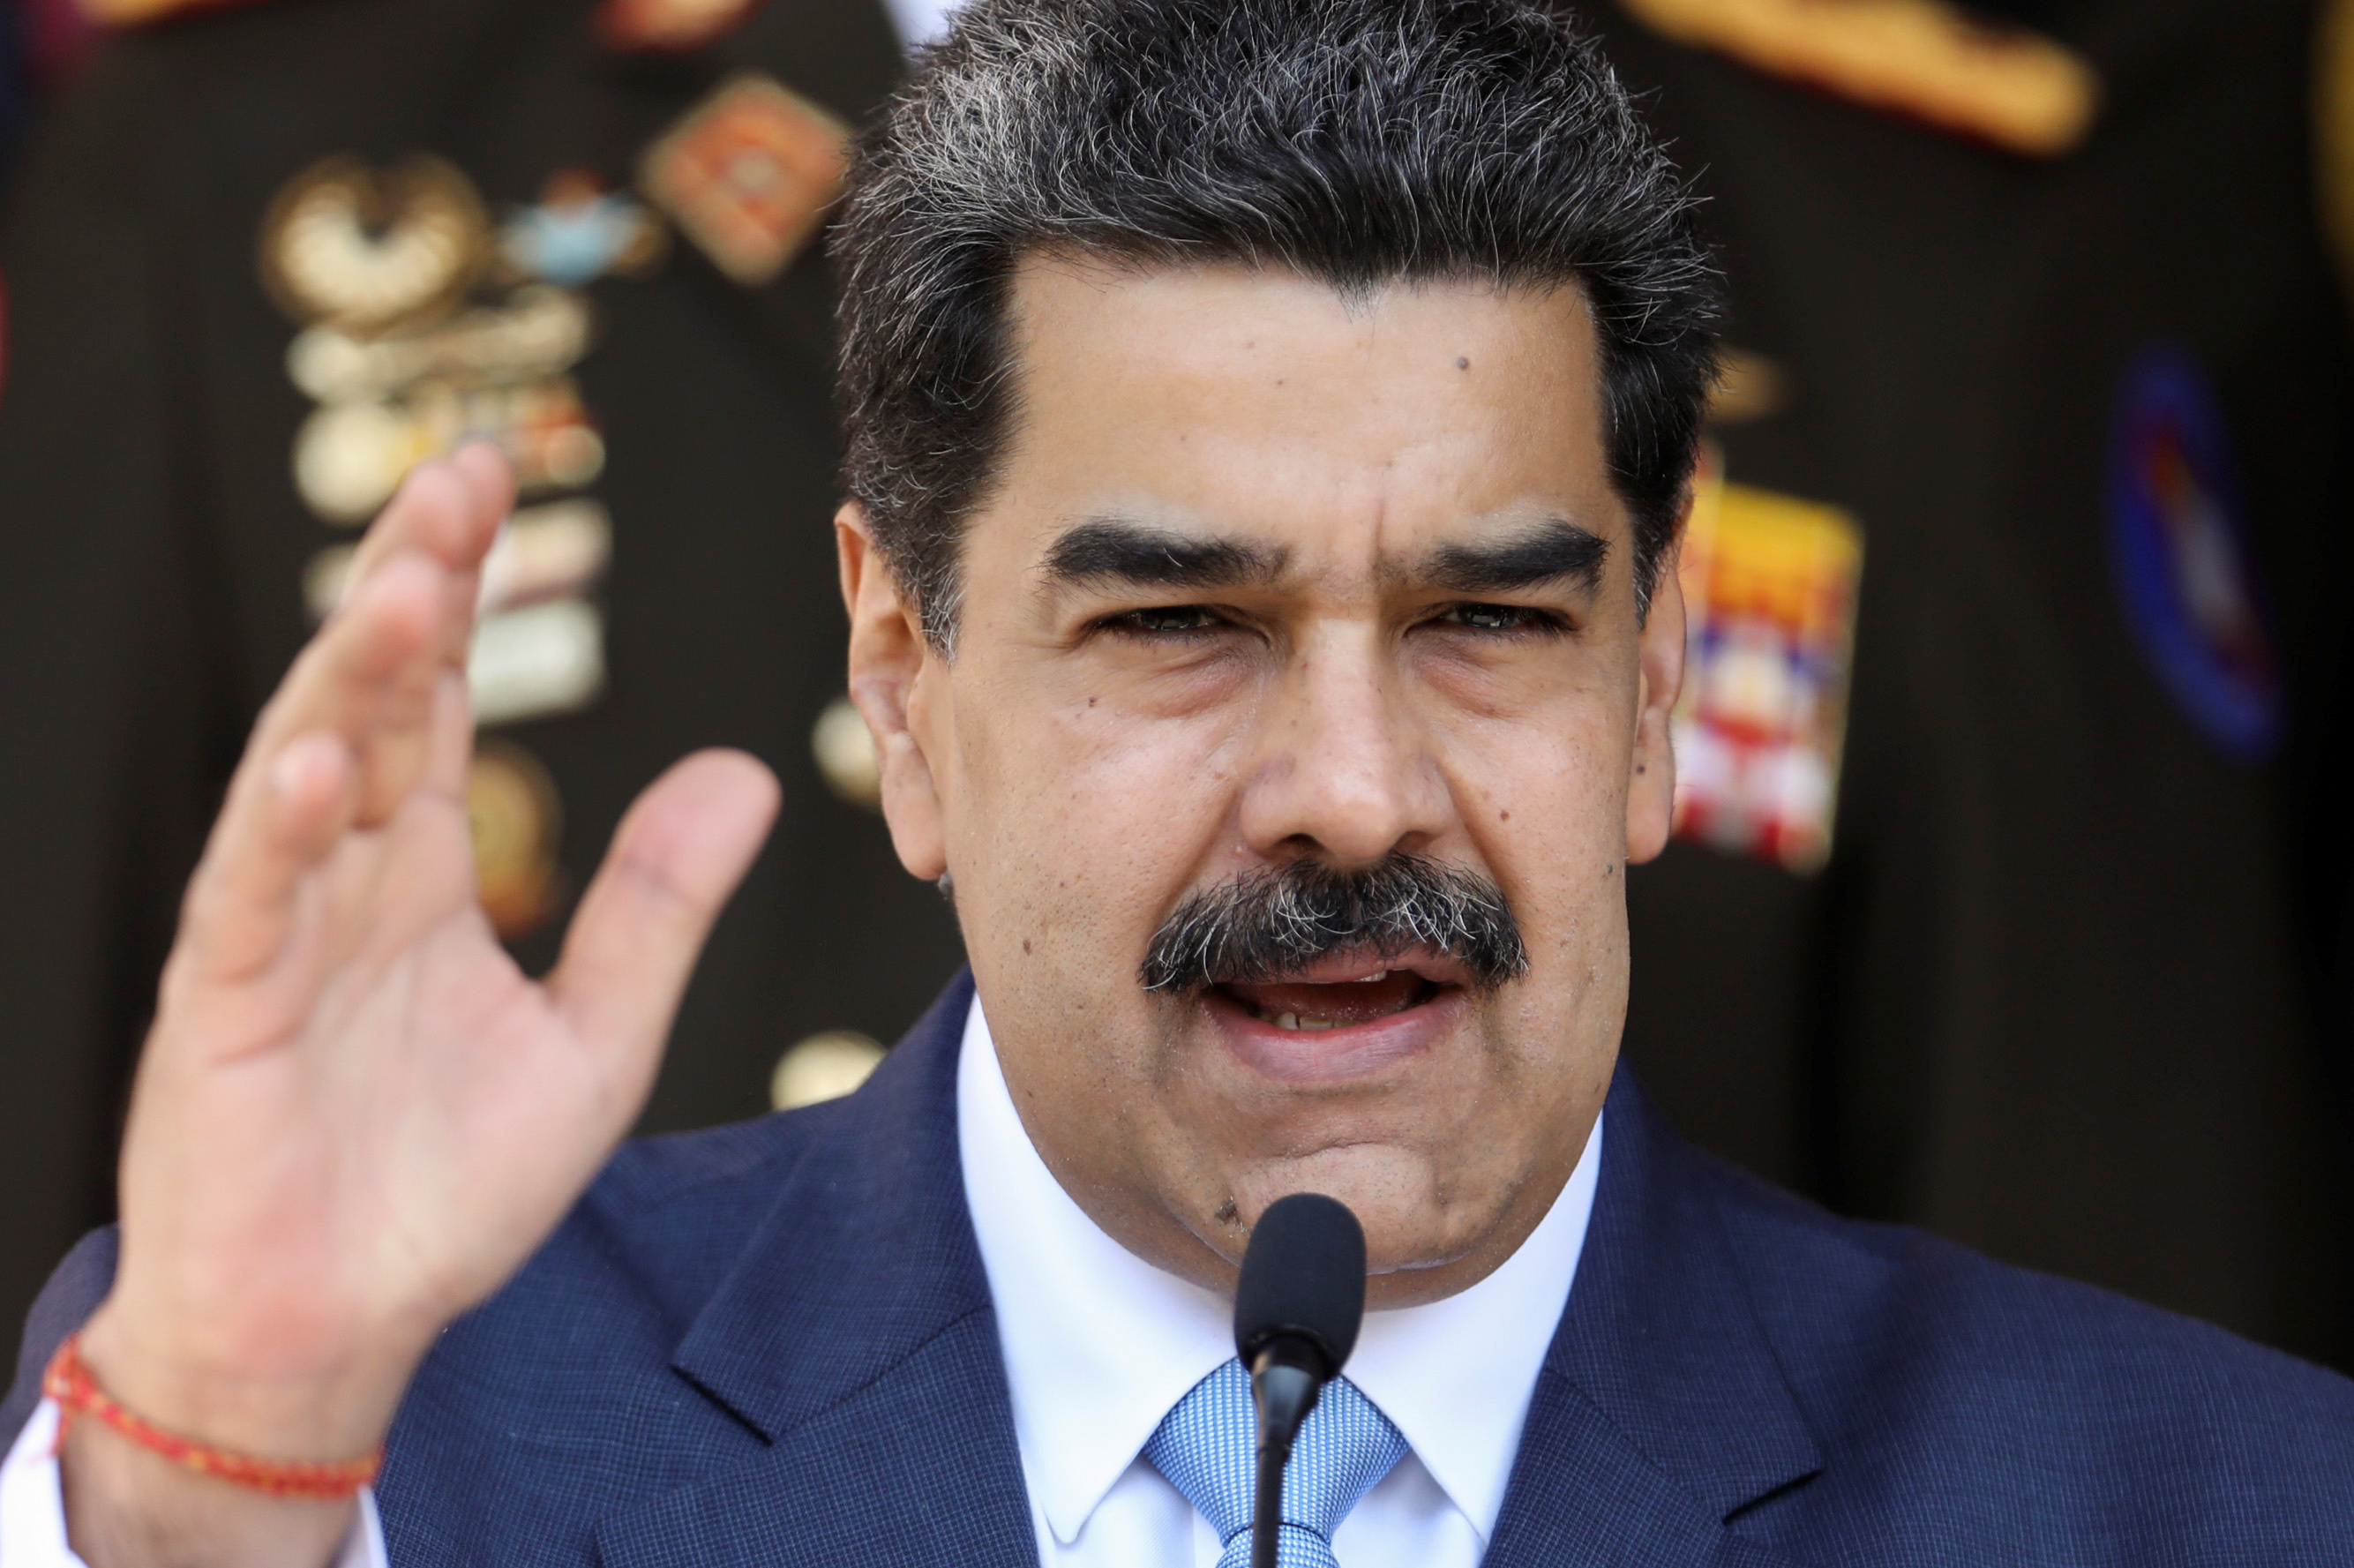 Norteamericanos capturados en Chuao serán juzgados por la justicia chavista, adelanta Maduro